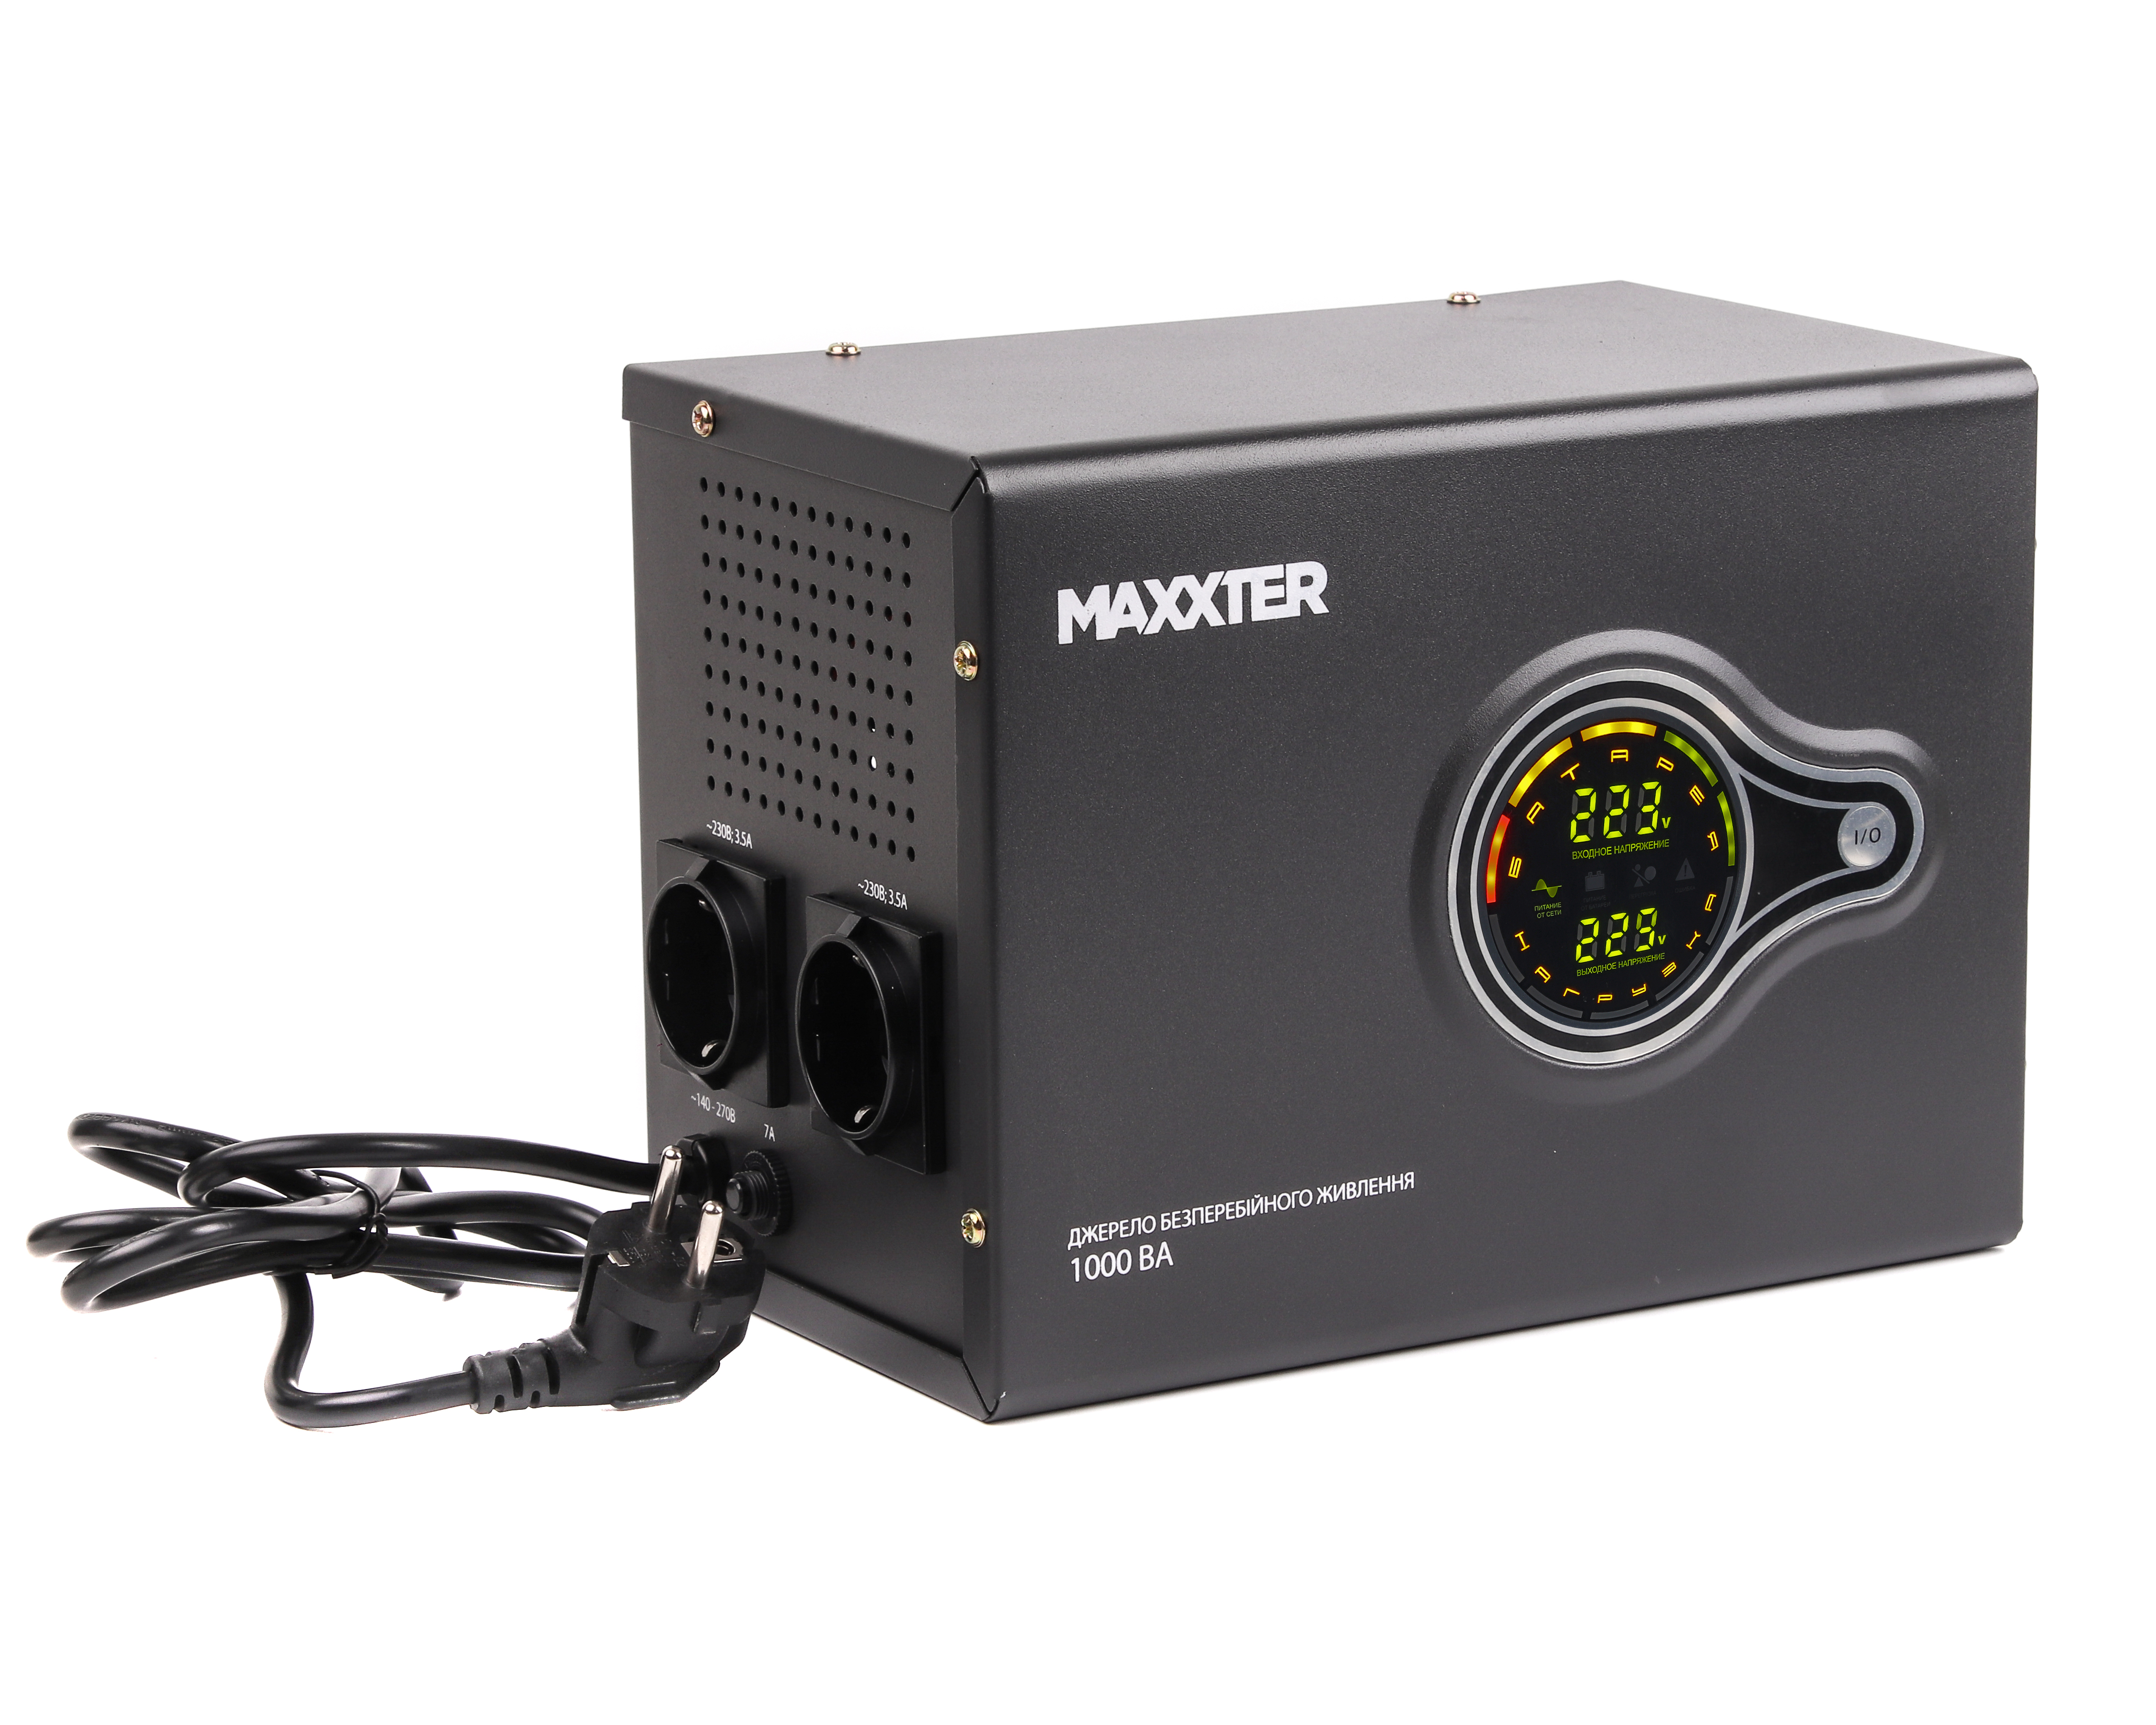 Купить источник бесперебойного питания Maxxter MX-HI-PSW1000-01 в Днепре